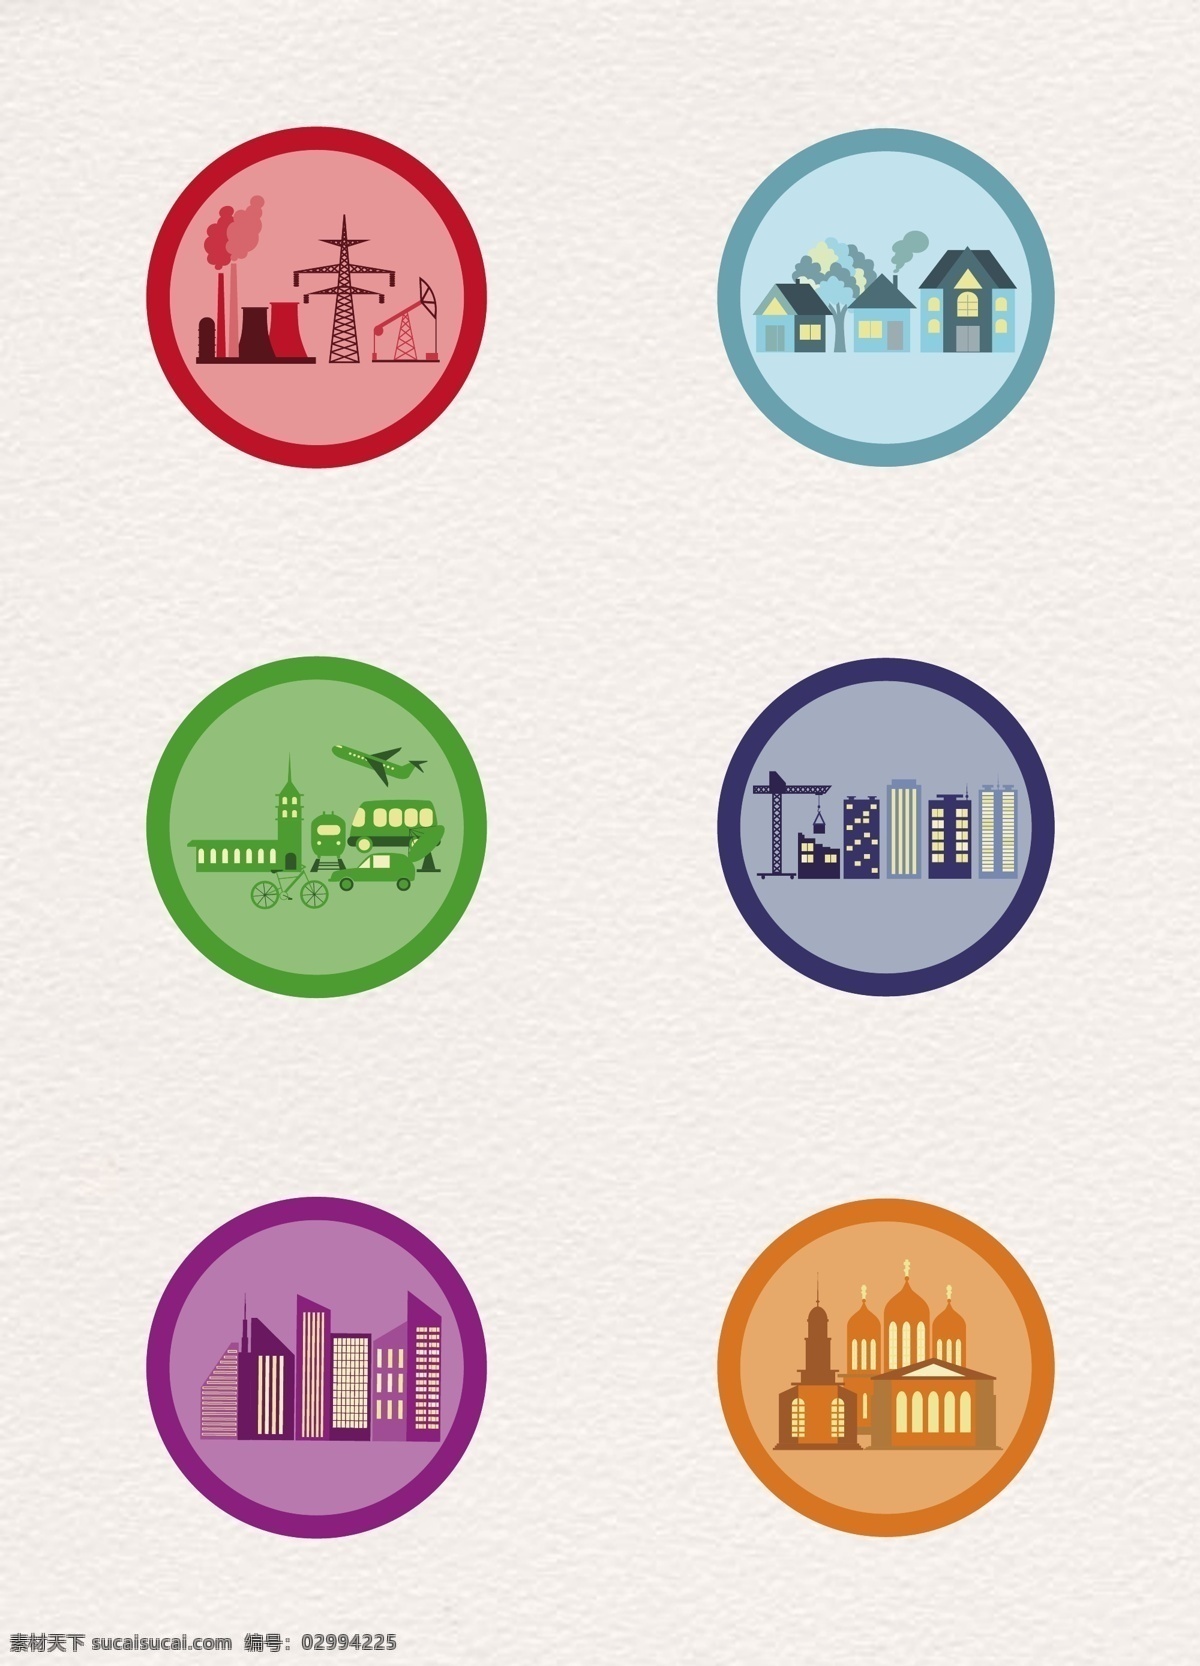 彩色 圆形 工业建筑 图标素材 图标 建筑物